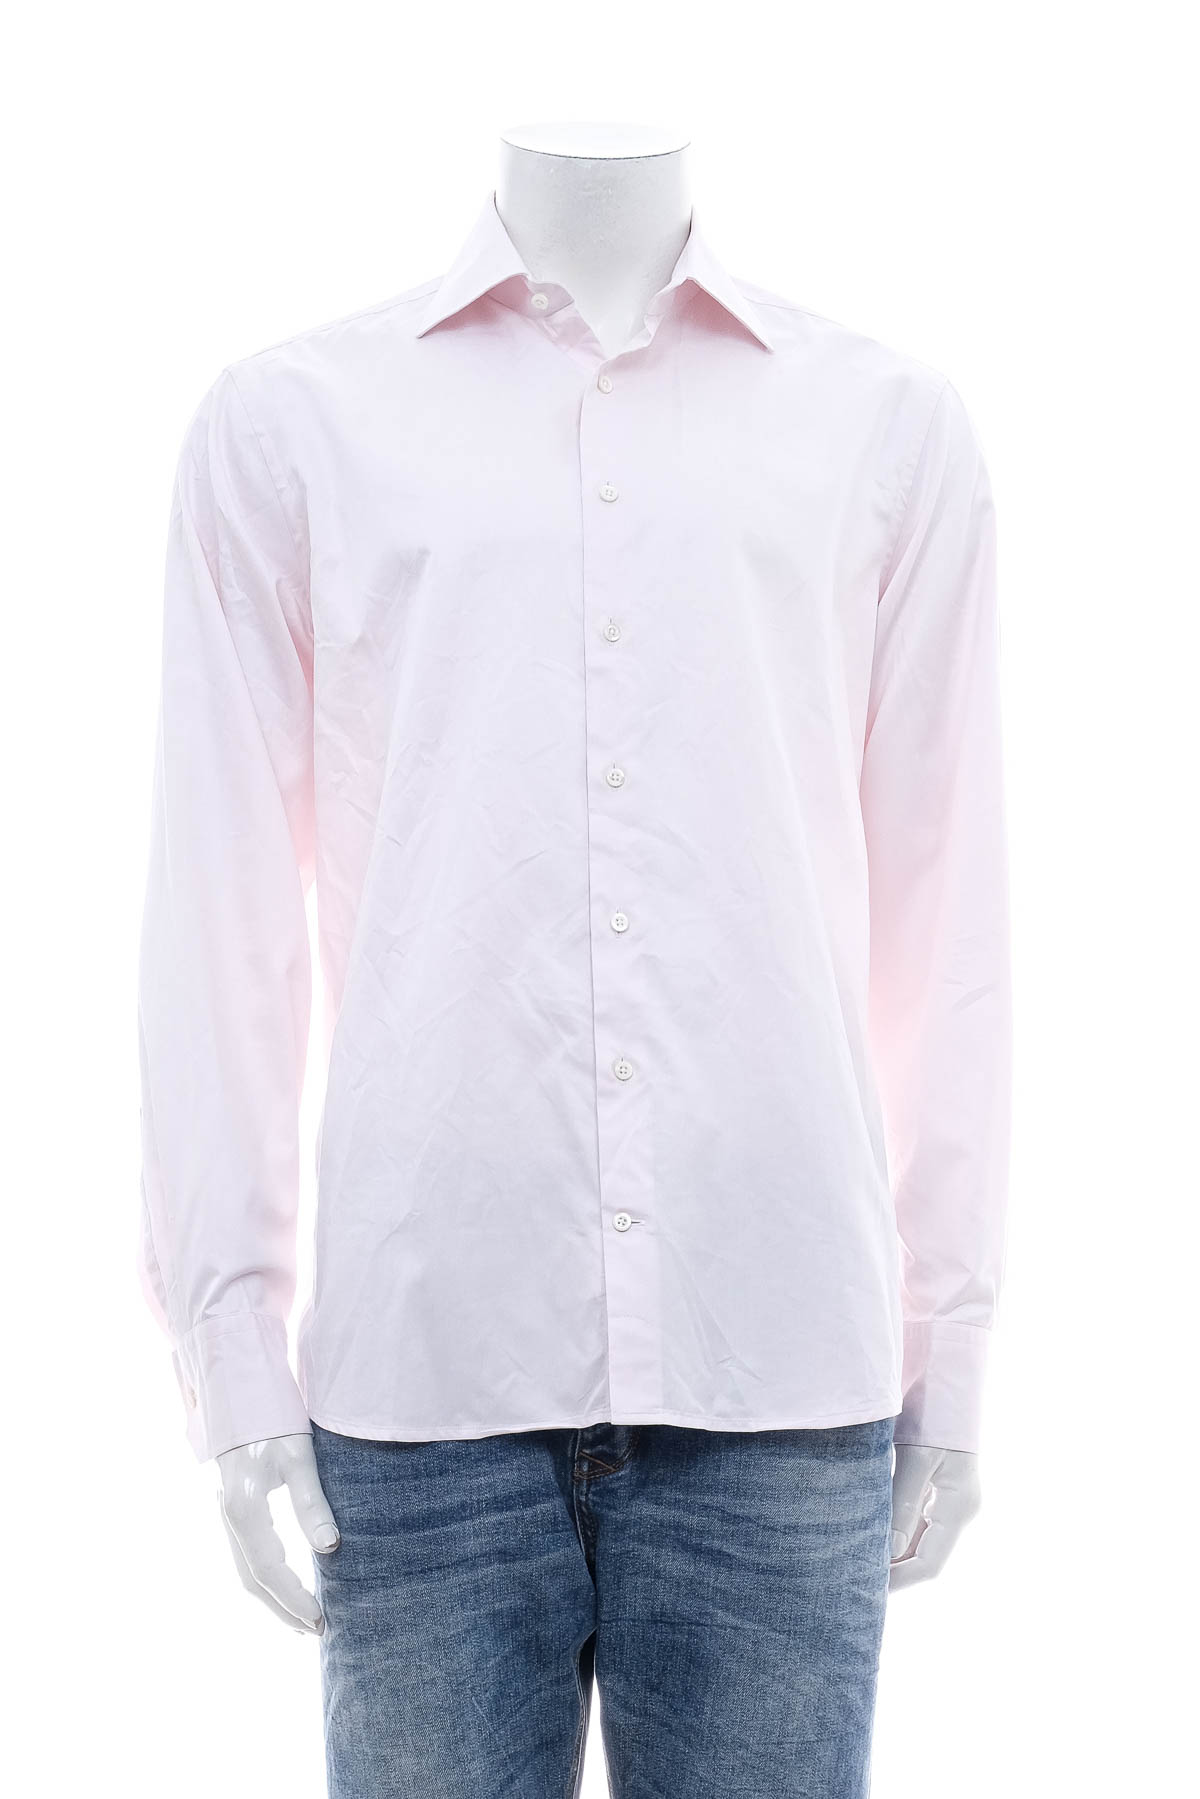 Ανδρικό πουκάμισο - Stenstroms - 0